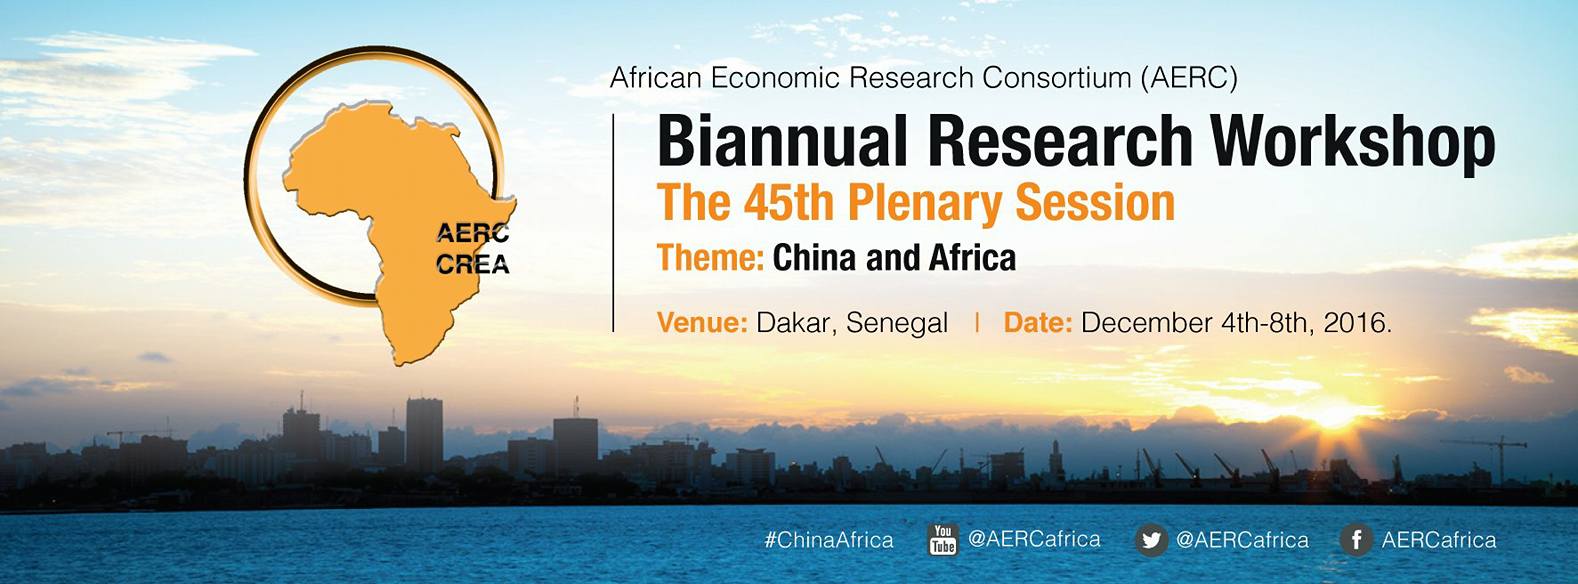 La Chine et l’Afrique au cœur de l’Atelier biannuel de recherche de l’AERC